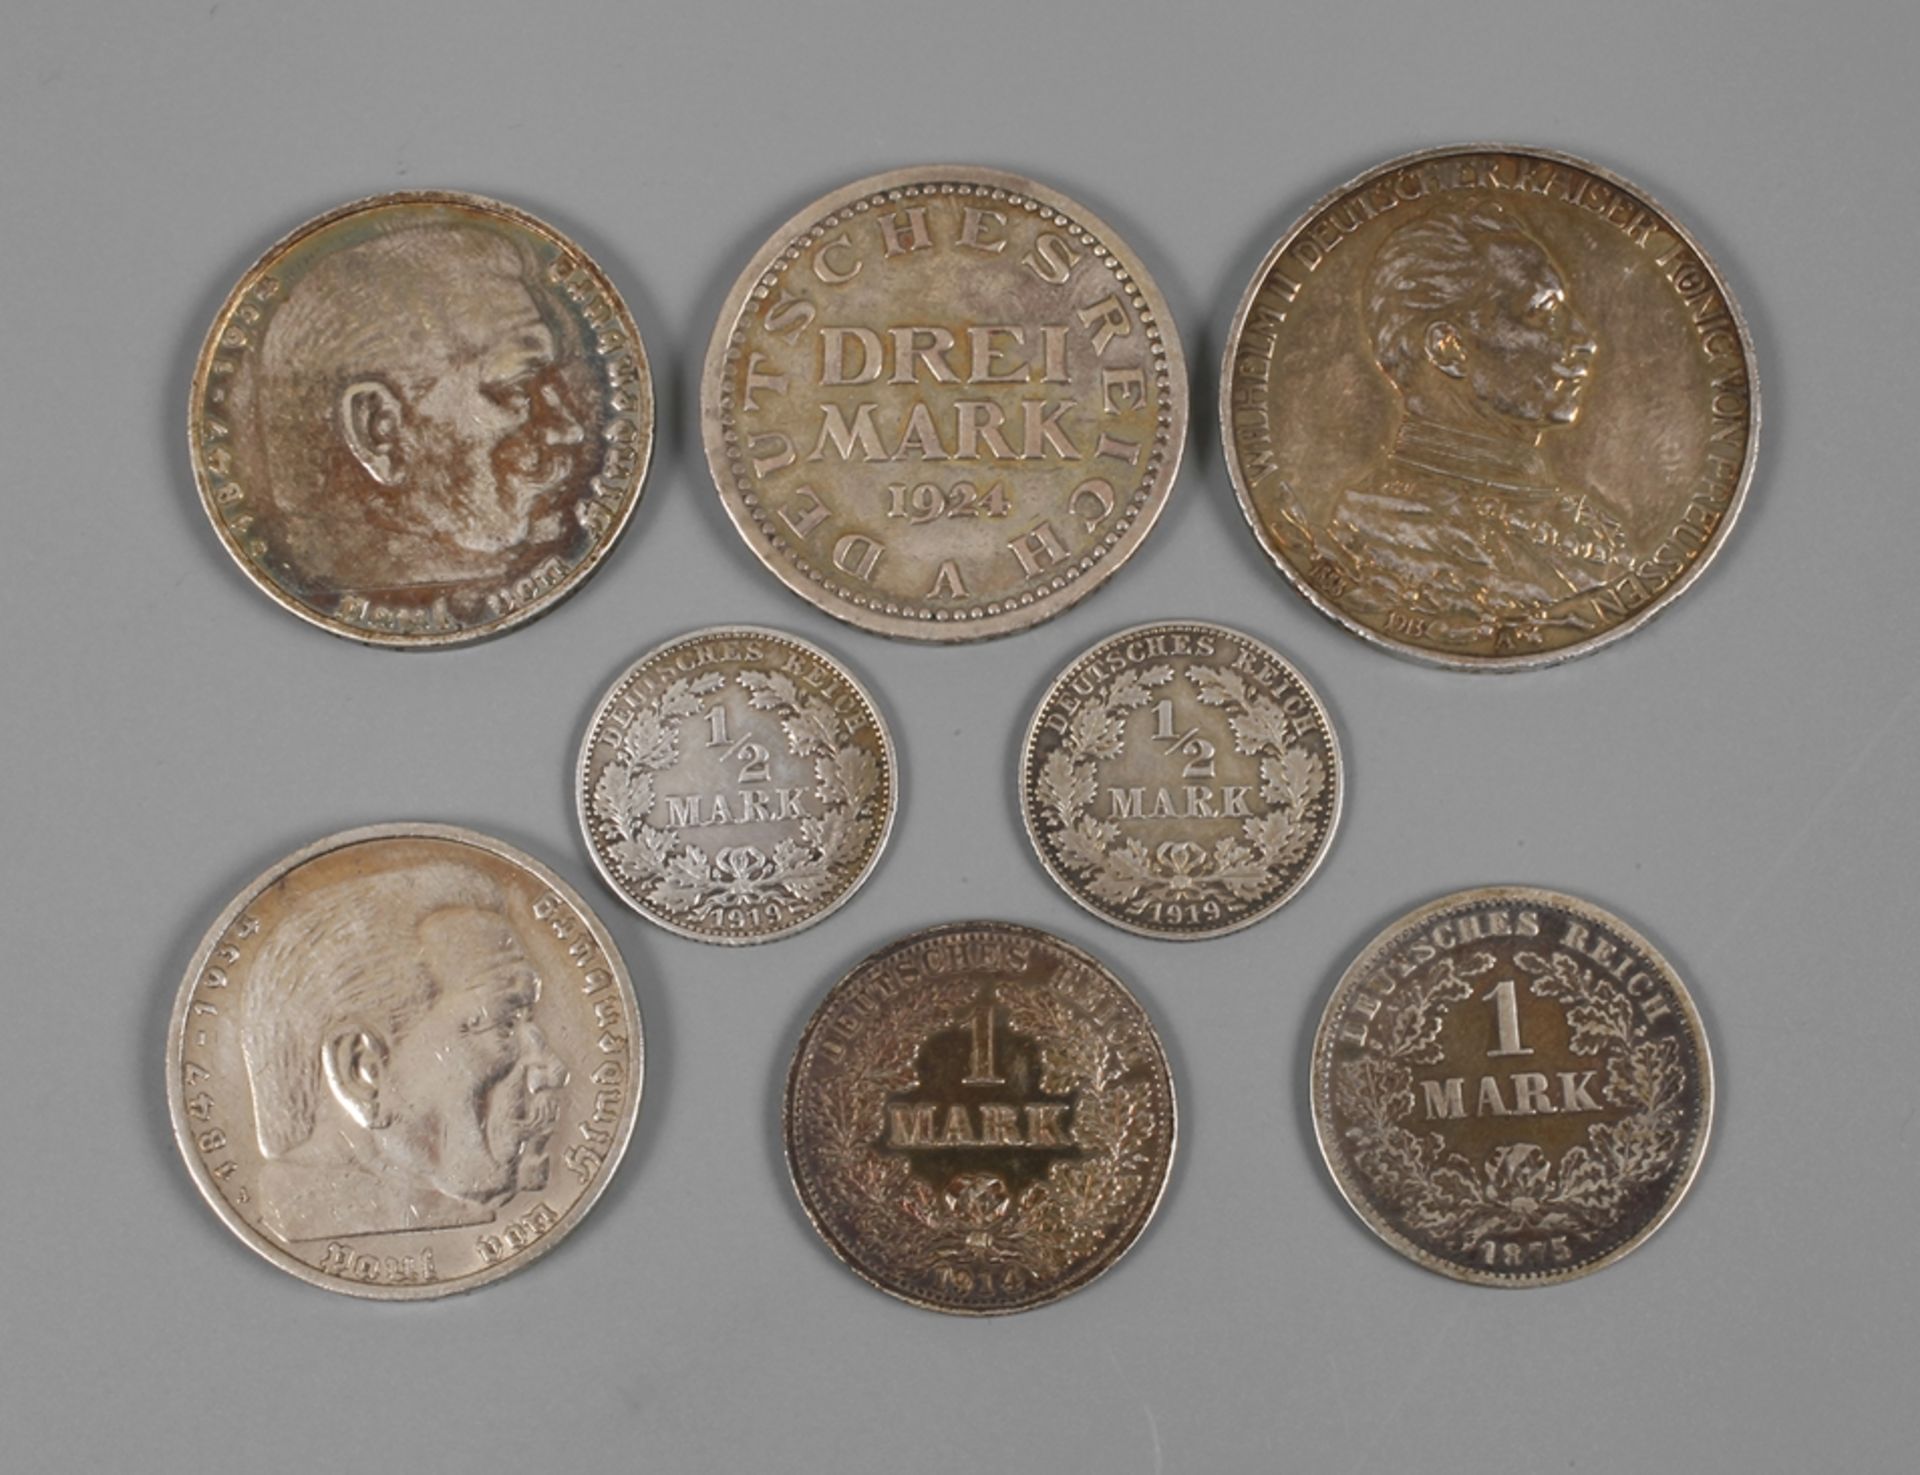 Kleines Konvolut Silbermünzen DR3 Mark Preußen 1913, 1 Mark 1914 (F), 1 Mark 1875 (F), zweimal 1/2